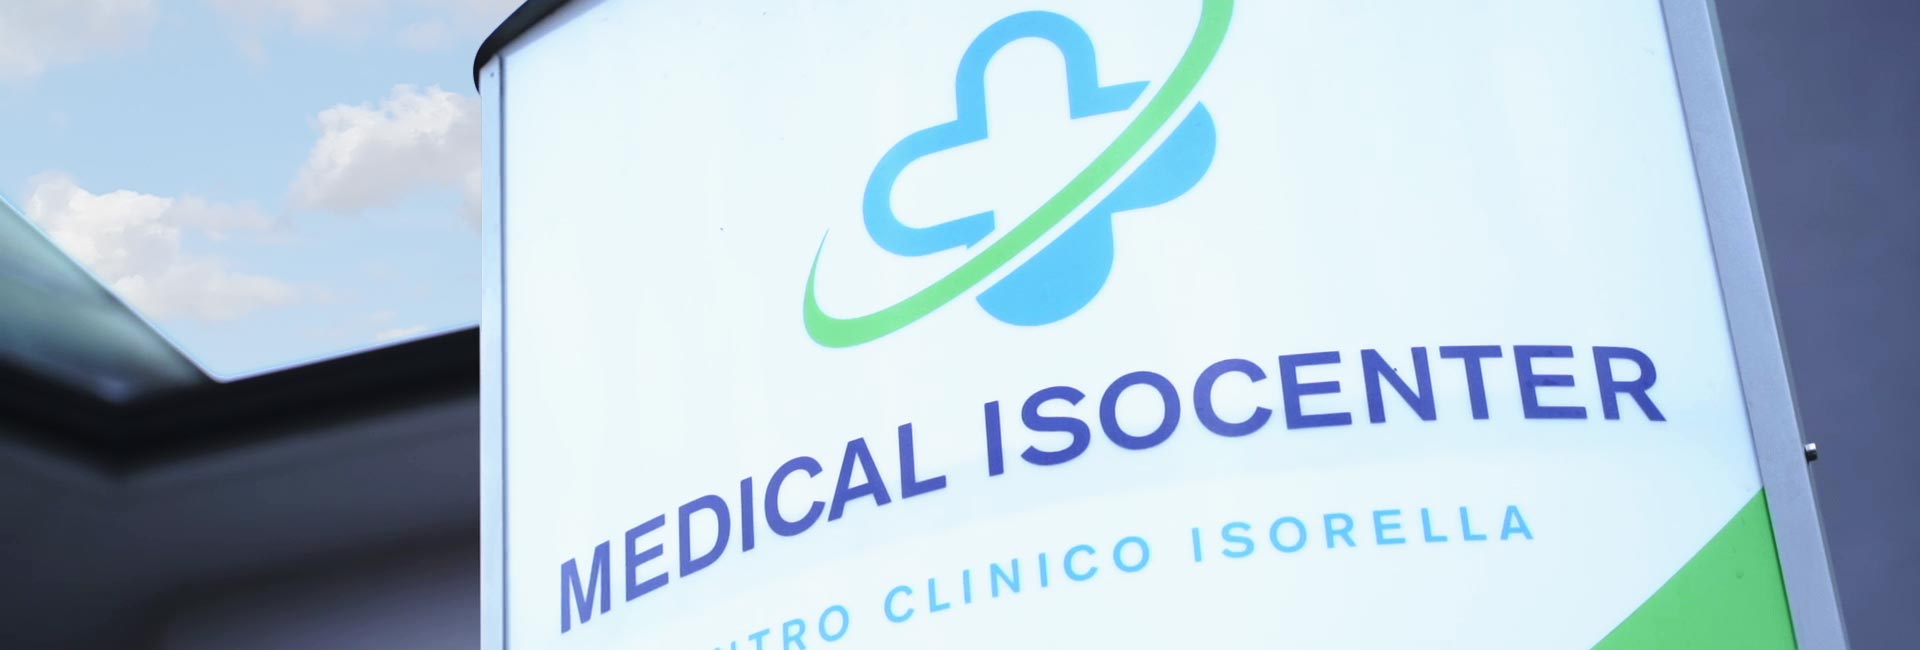 Medical Isocenter - Centro Clinico Isorella (Brescia) per prestazioni sanitarie ed esami medici in centro diagnostico privato